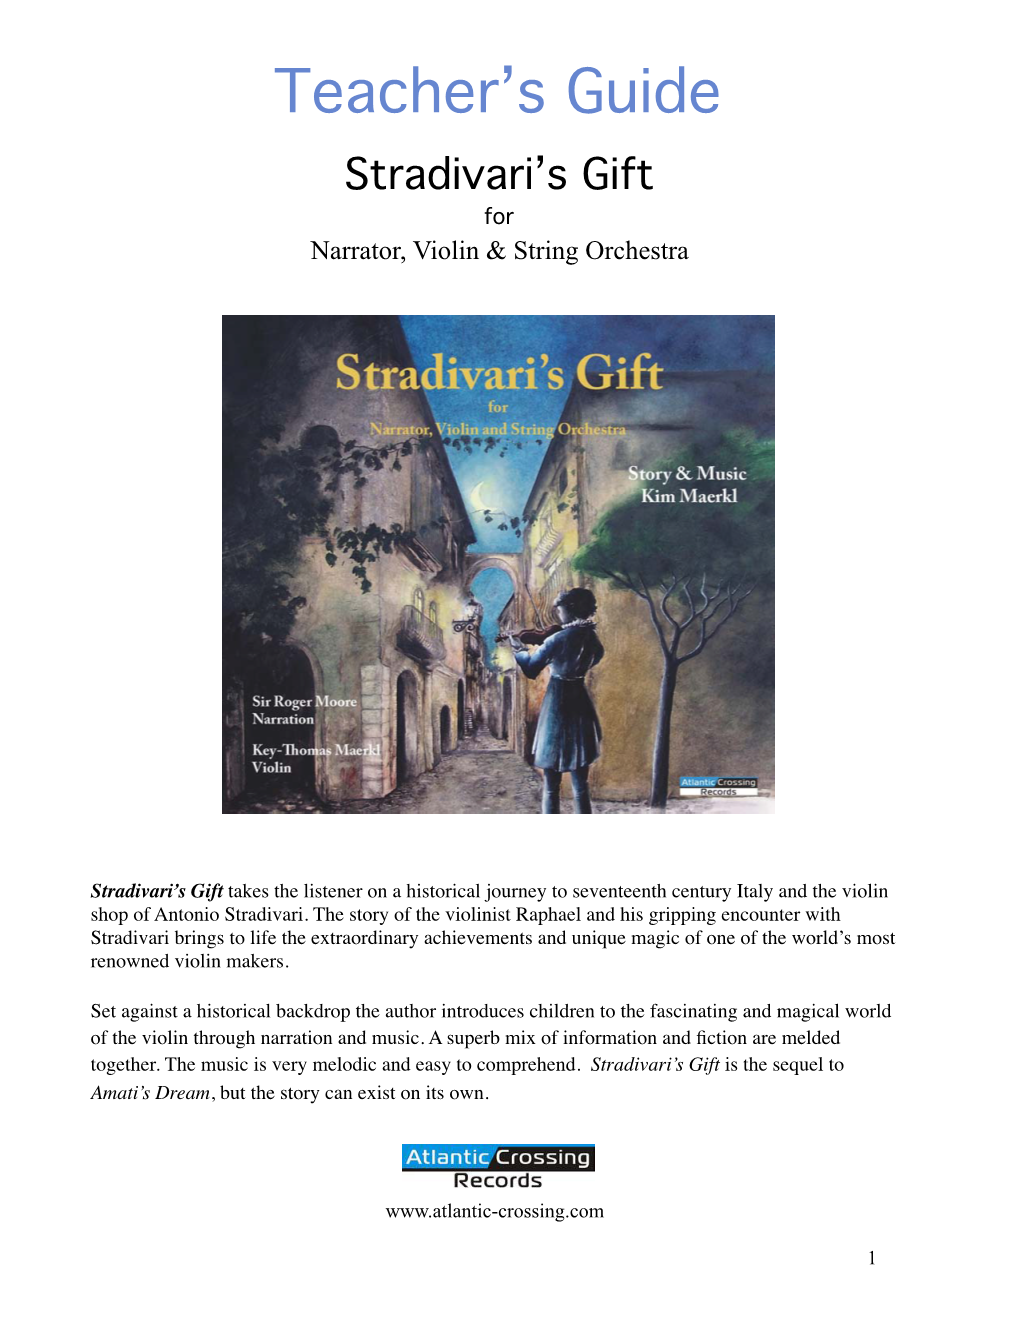 Stradivari's Gift